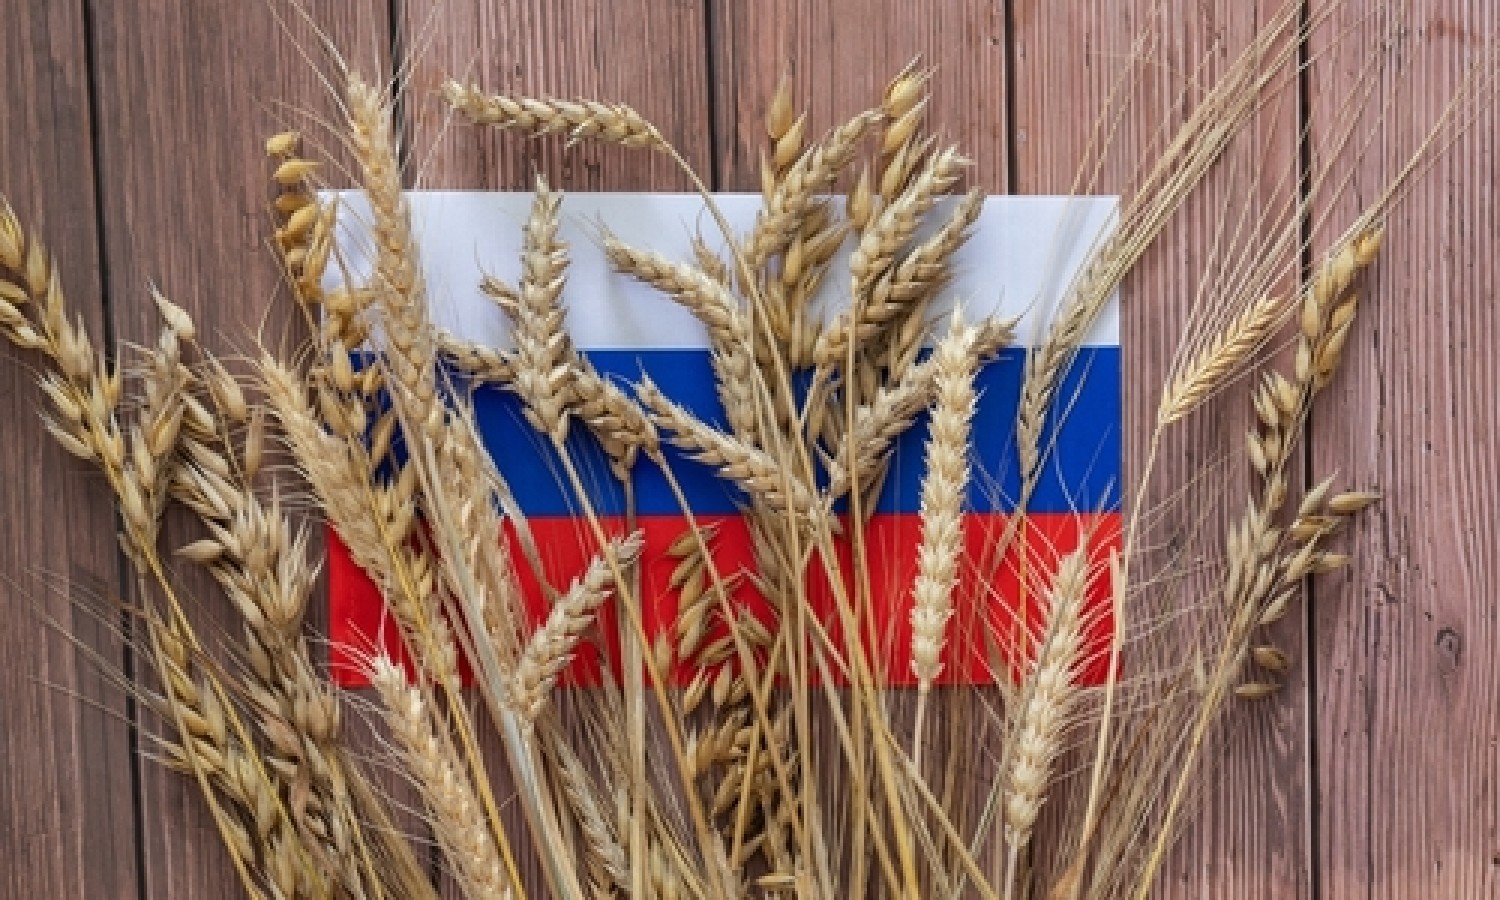 In arrivo dazi sui prodotti agricoli da Russia e Bielorussia